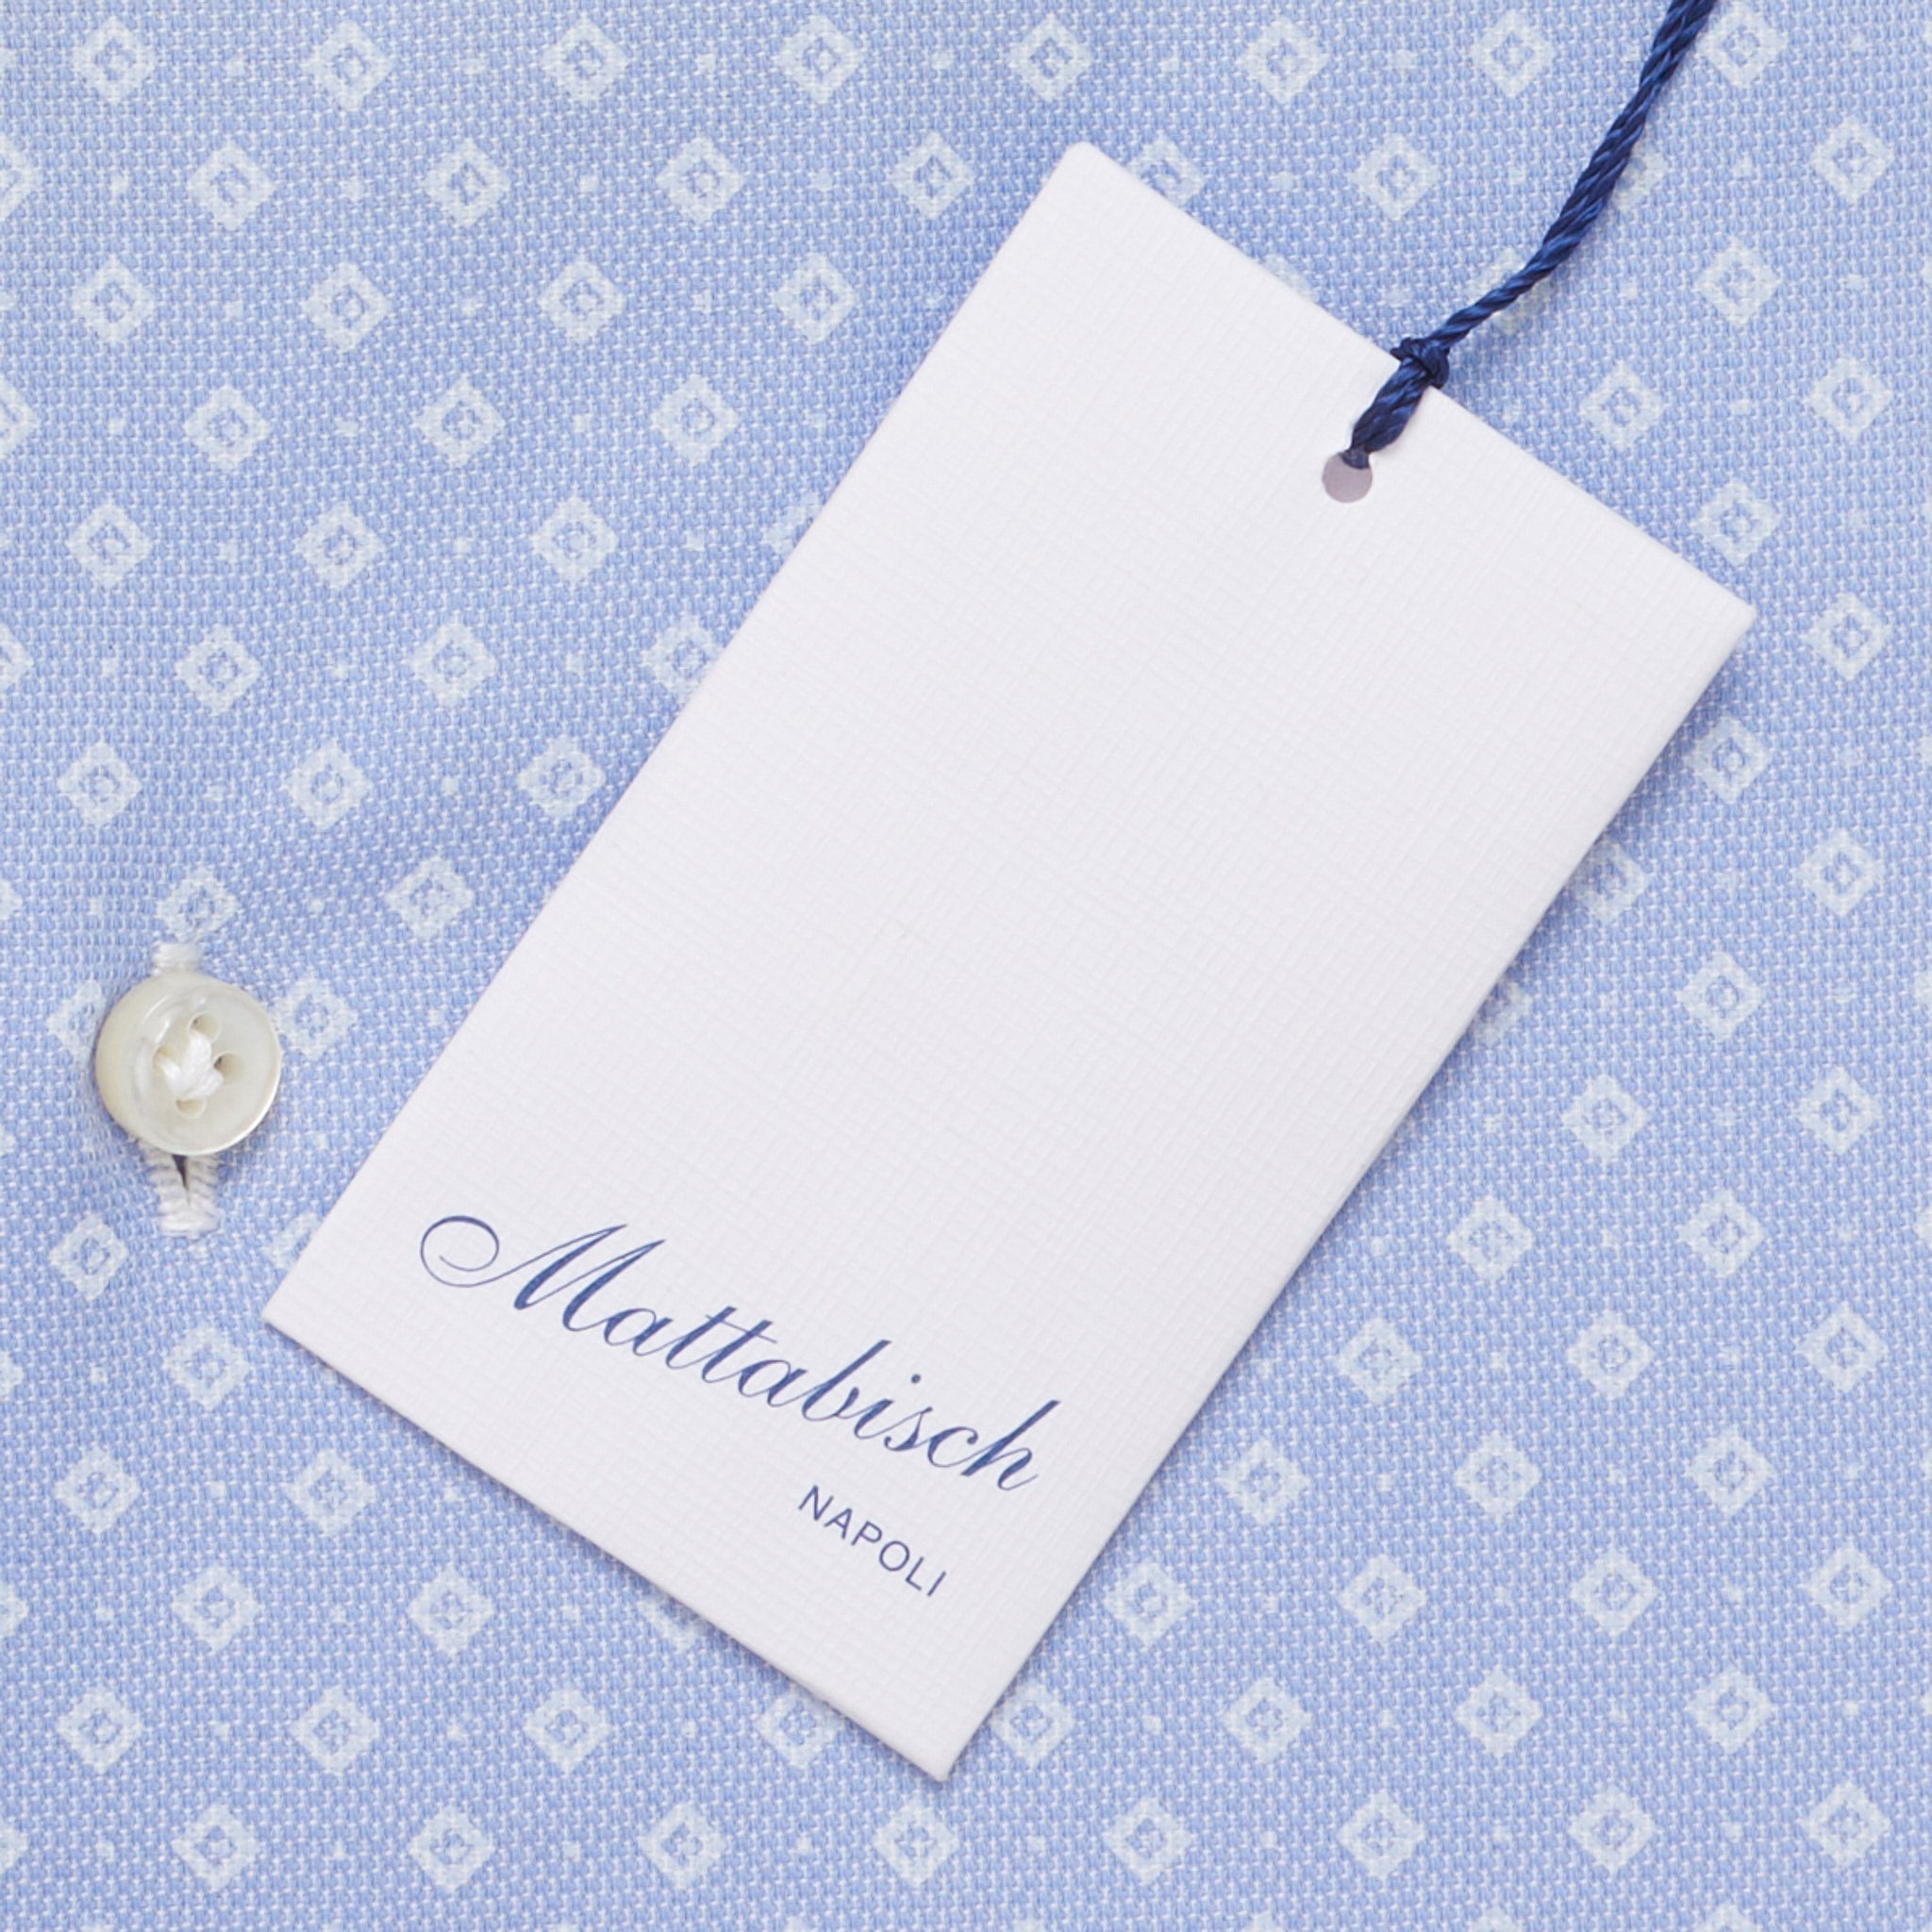 MATTABISCH by Kiton Handmade Blue Rhombus Dot Shirt 40 NEW US 15.75 Slim Fit MATTABISCH